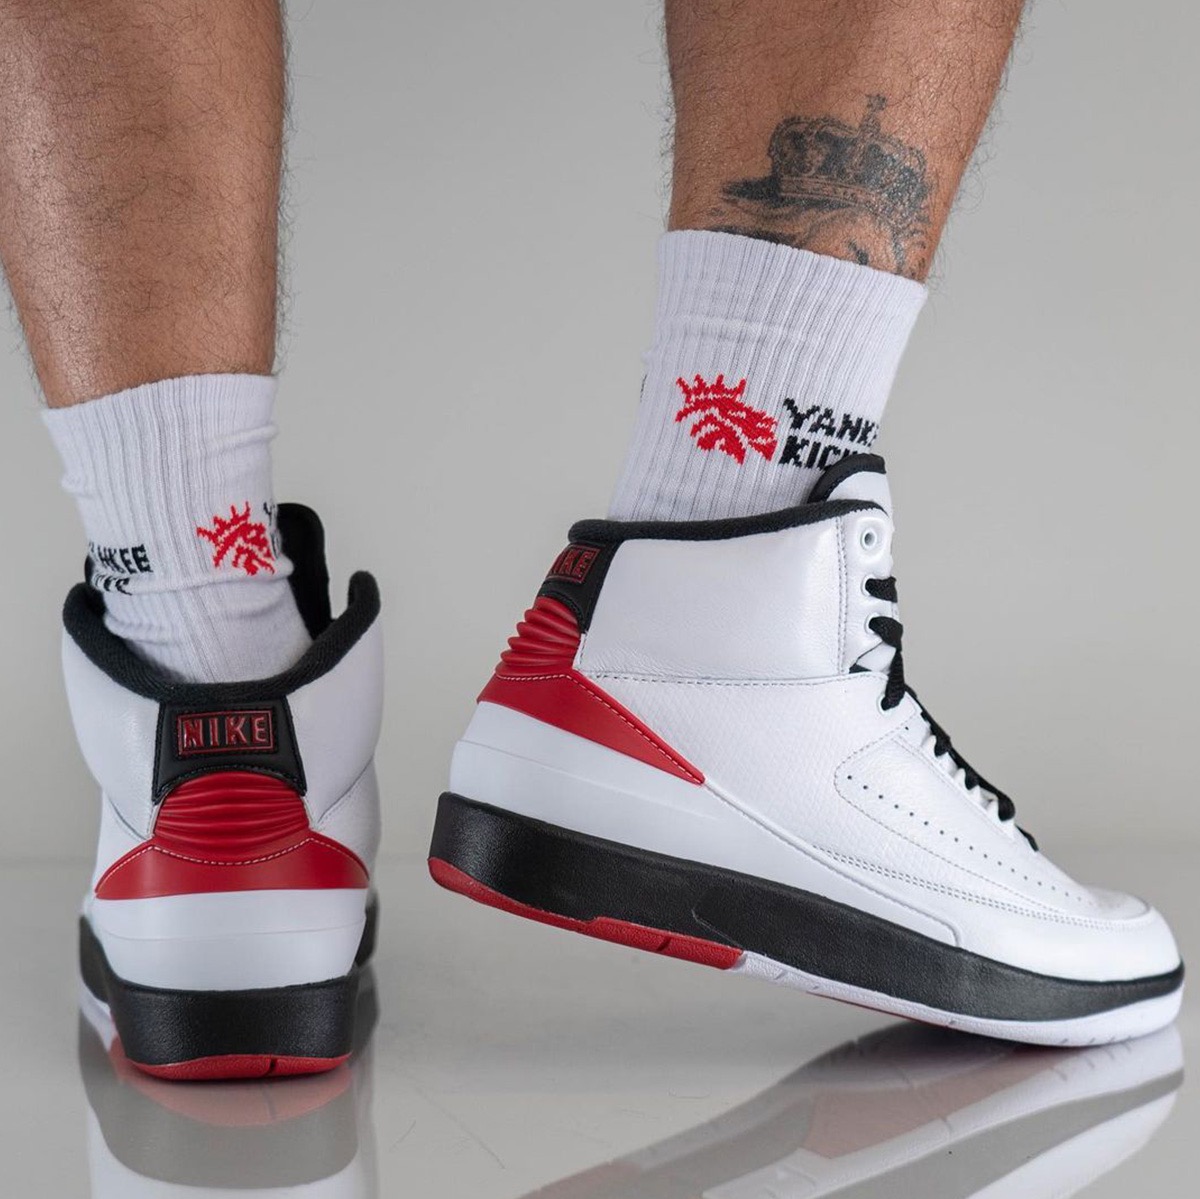 Nike Air Jordan 2 Retro OG “Chicago”が国内年月日に